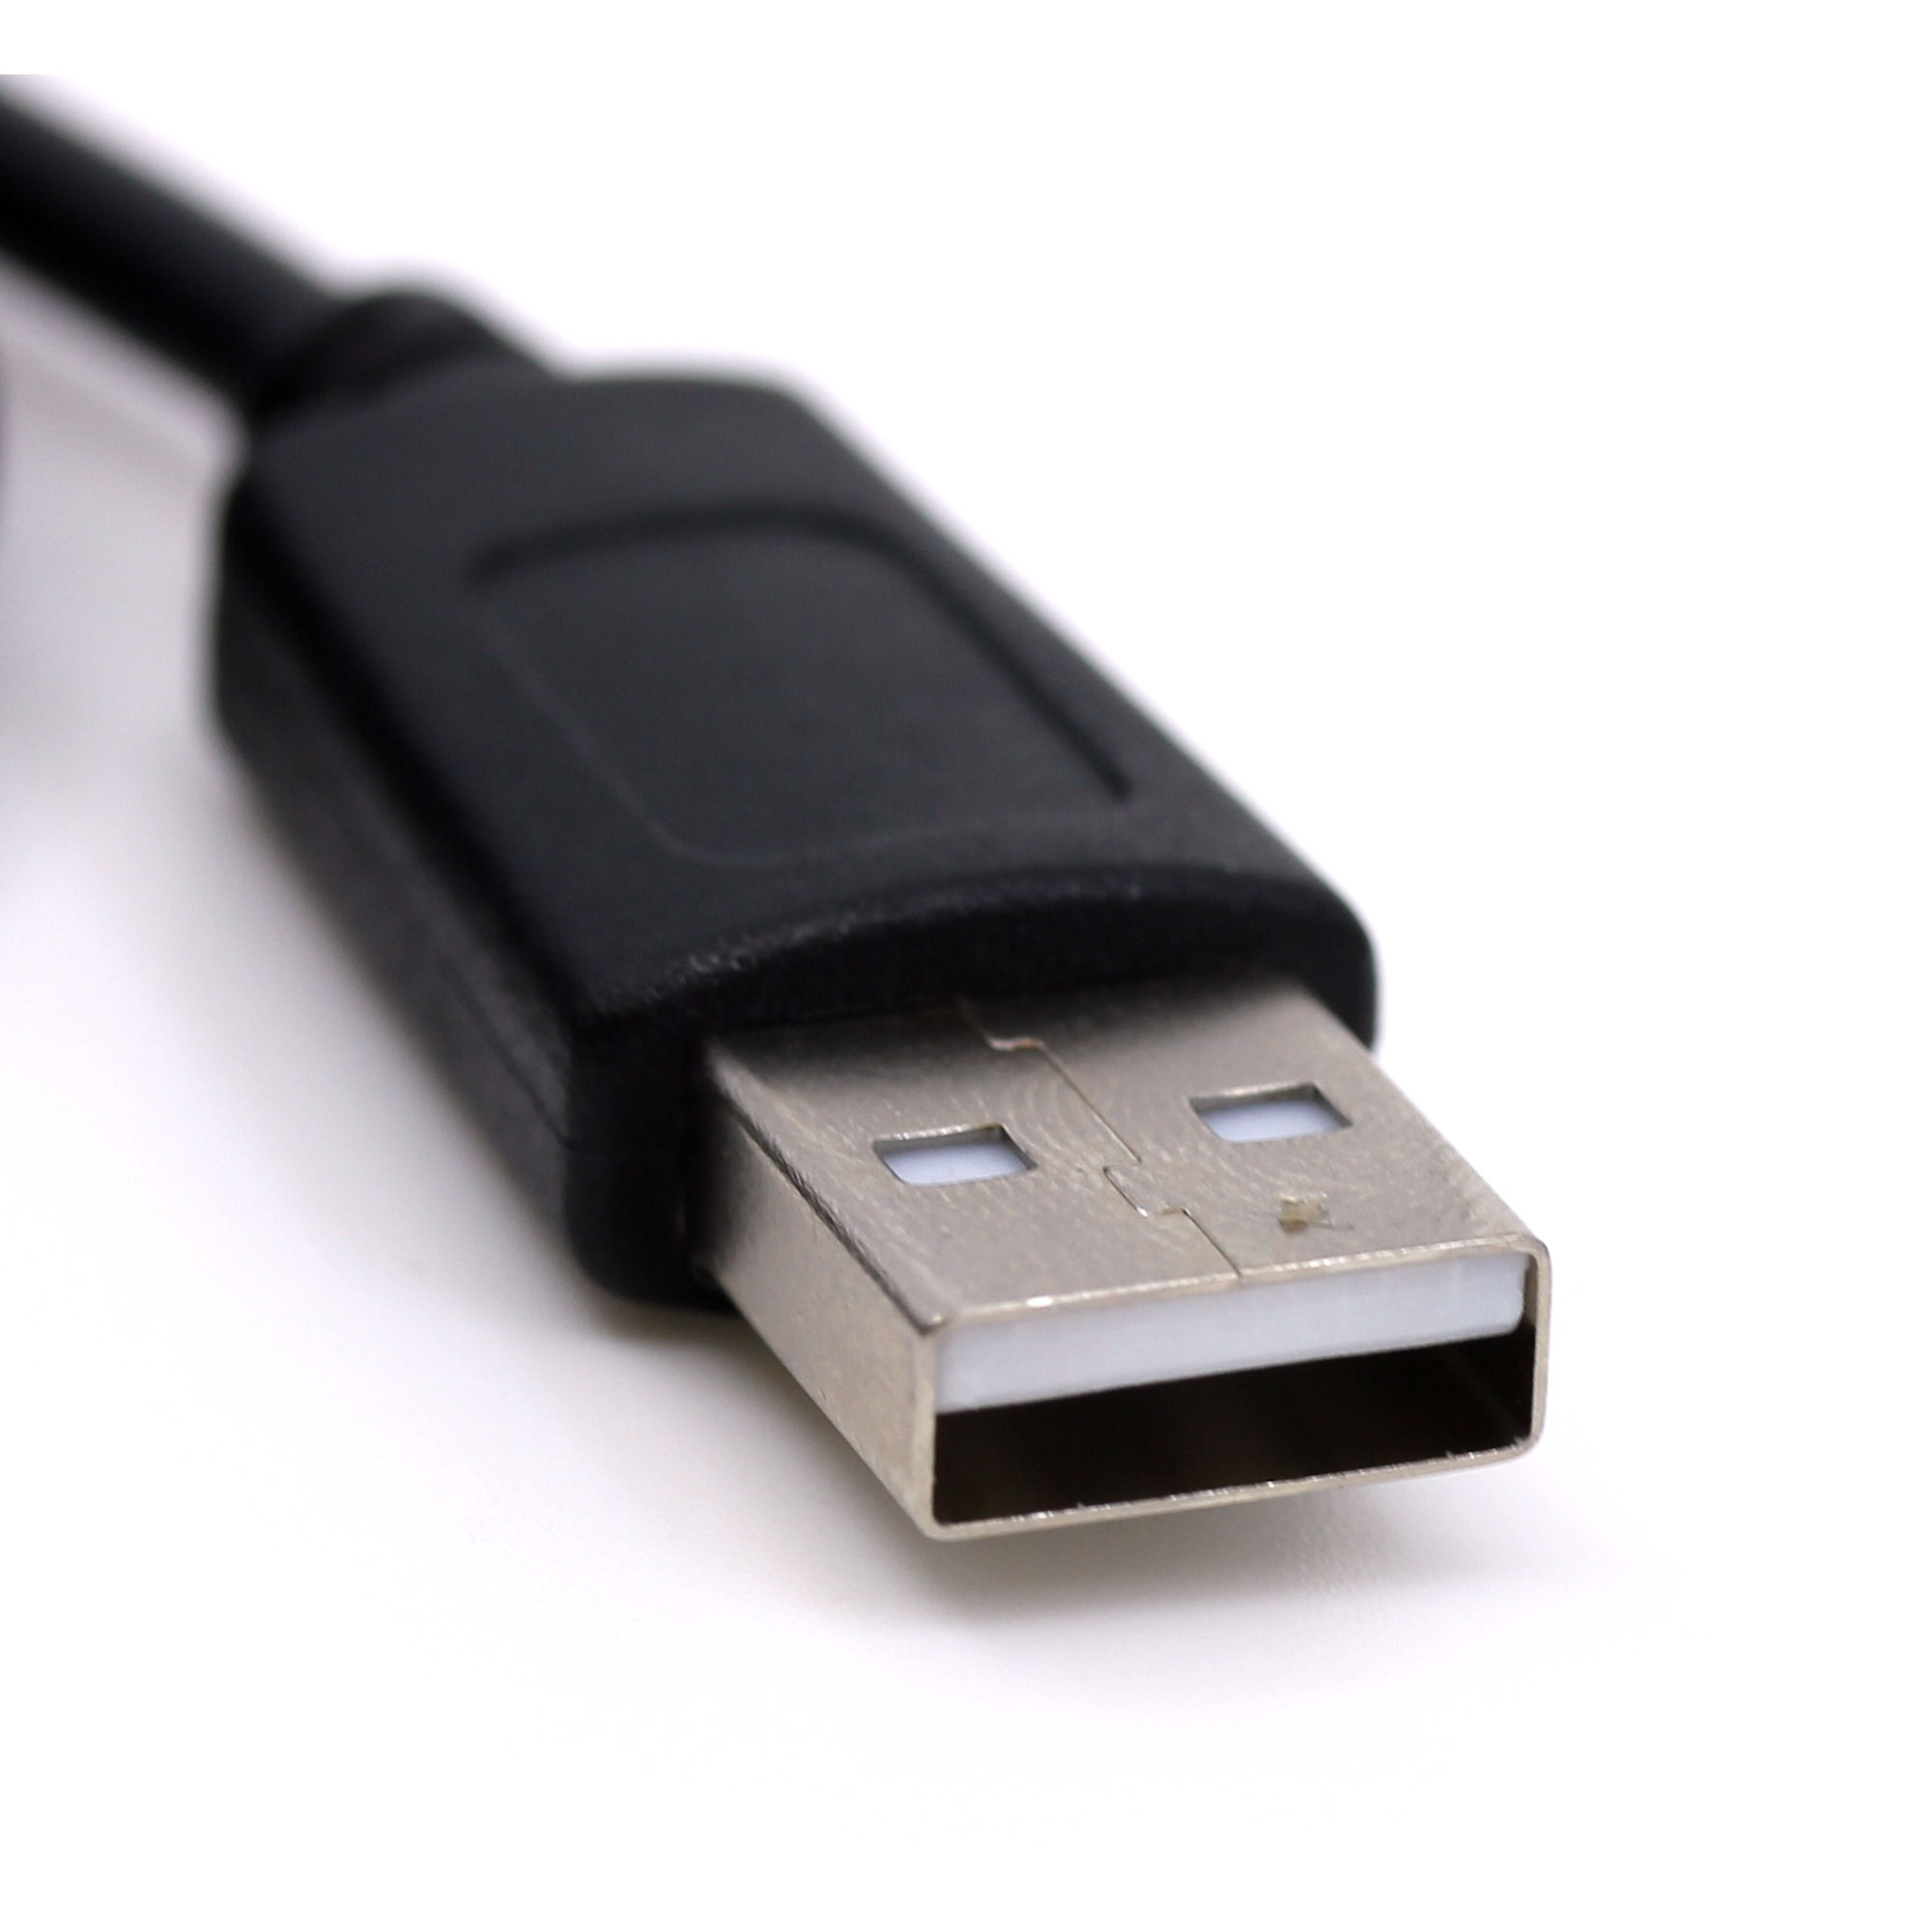 USB Ladekabel für Philips BT110C, BT150A, BT3900P, BT51W, BT6900A, VS300, VS500